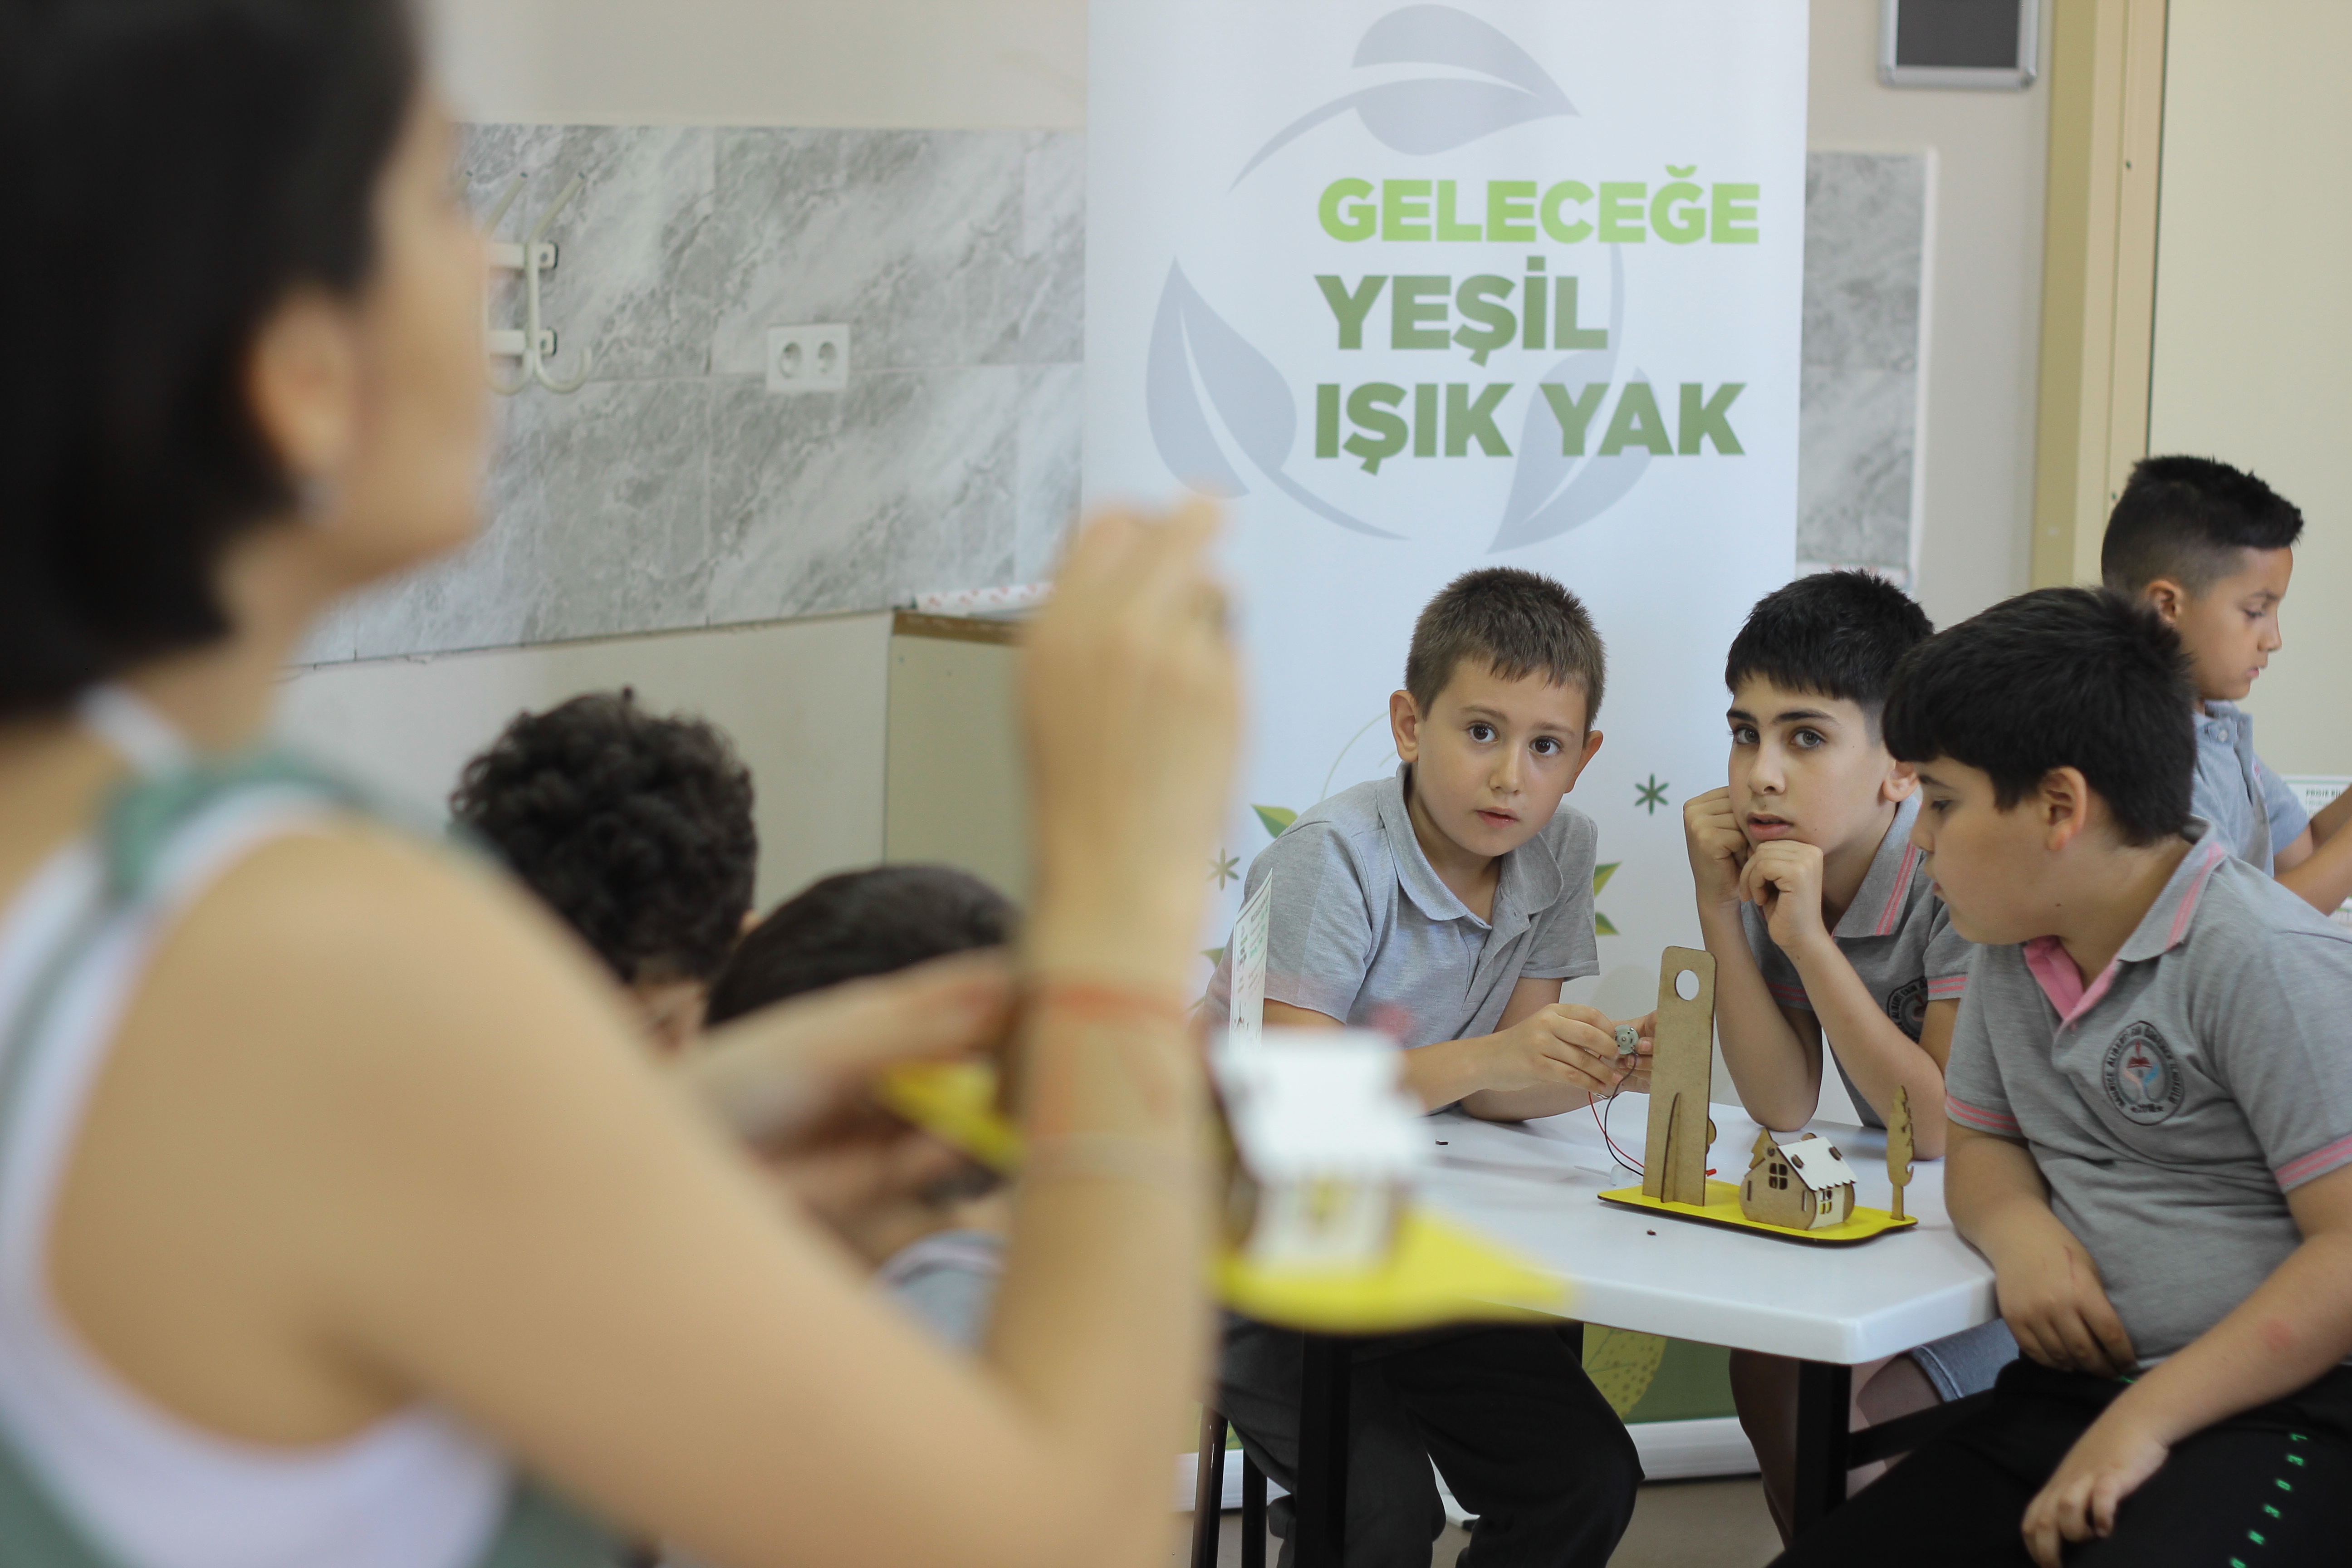 Geleceğe Yeşil Işık Yak Projesi ilk yılını İzmir’de tamamladı